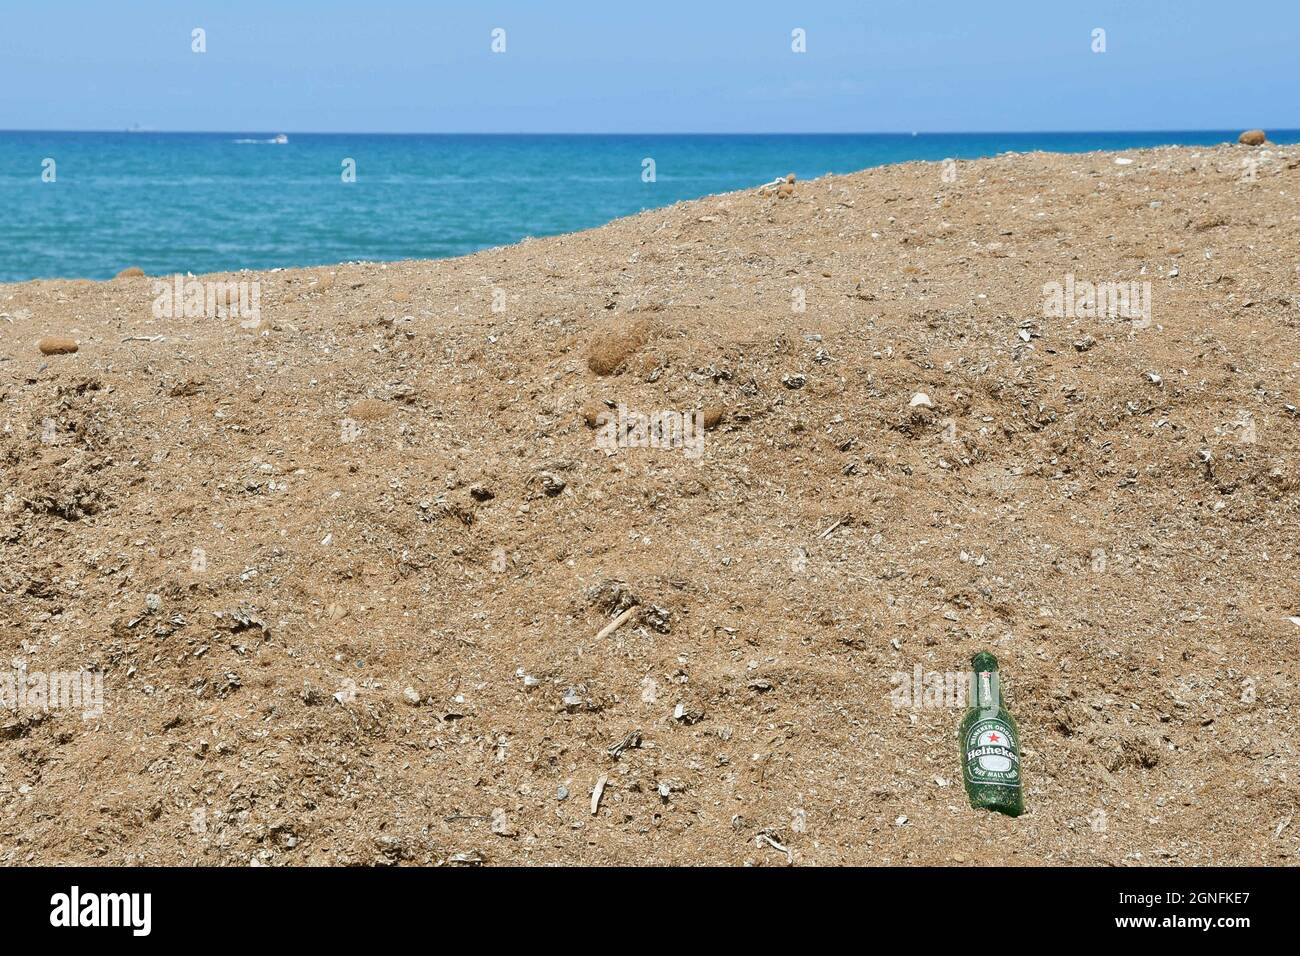 Une bouteille de bière vide abandonnée sur la rive sablonneuse avec la mer en arrière-plan, concept de problème environnemental, San Vincenzo, Toscane, Italie Banque D'Images